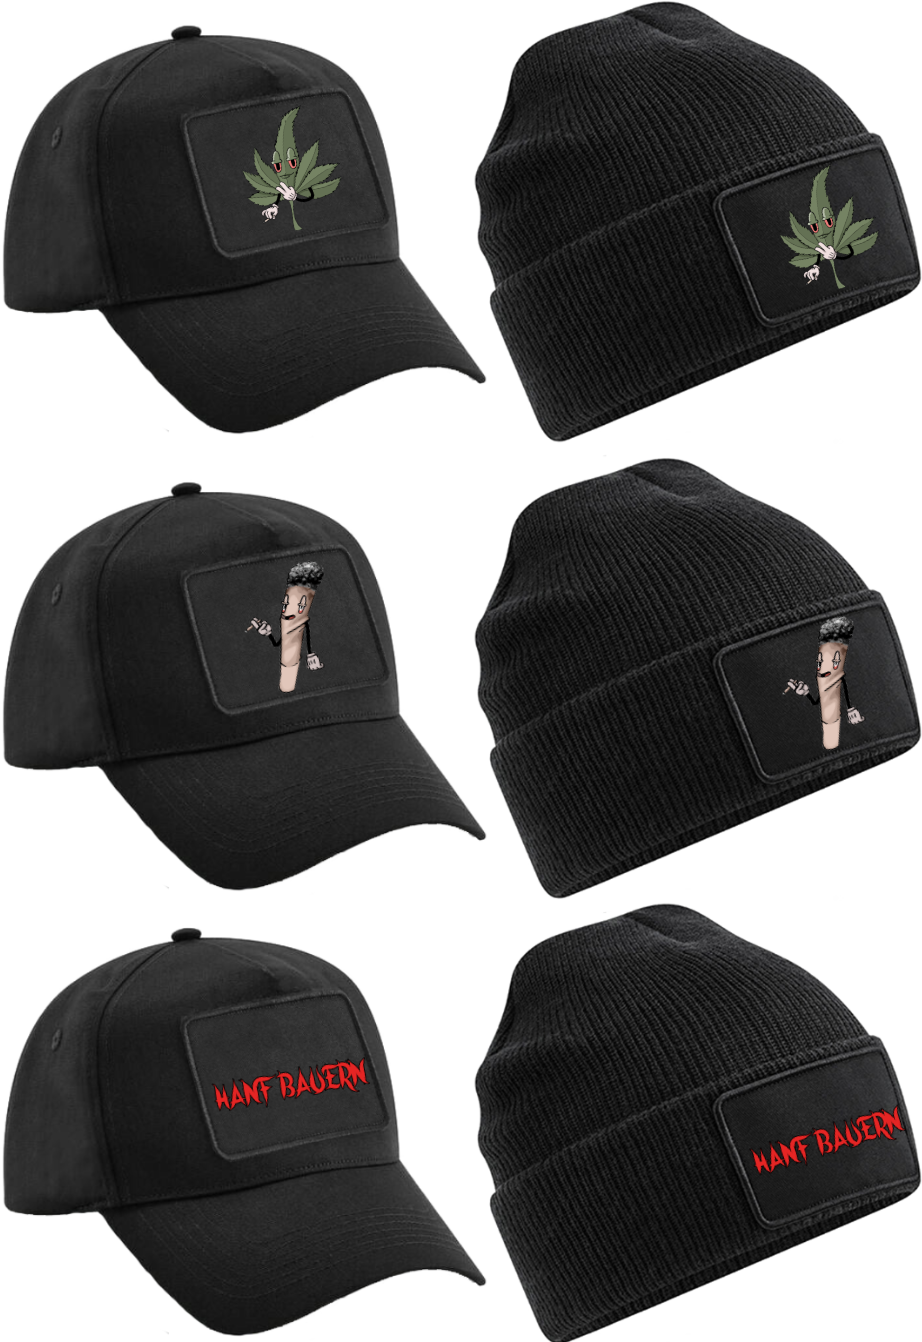 Die Hanf Bauern Cappy oder Mütze mit Klettpatch - 3 Varianten